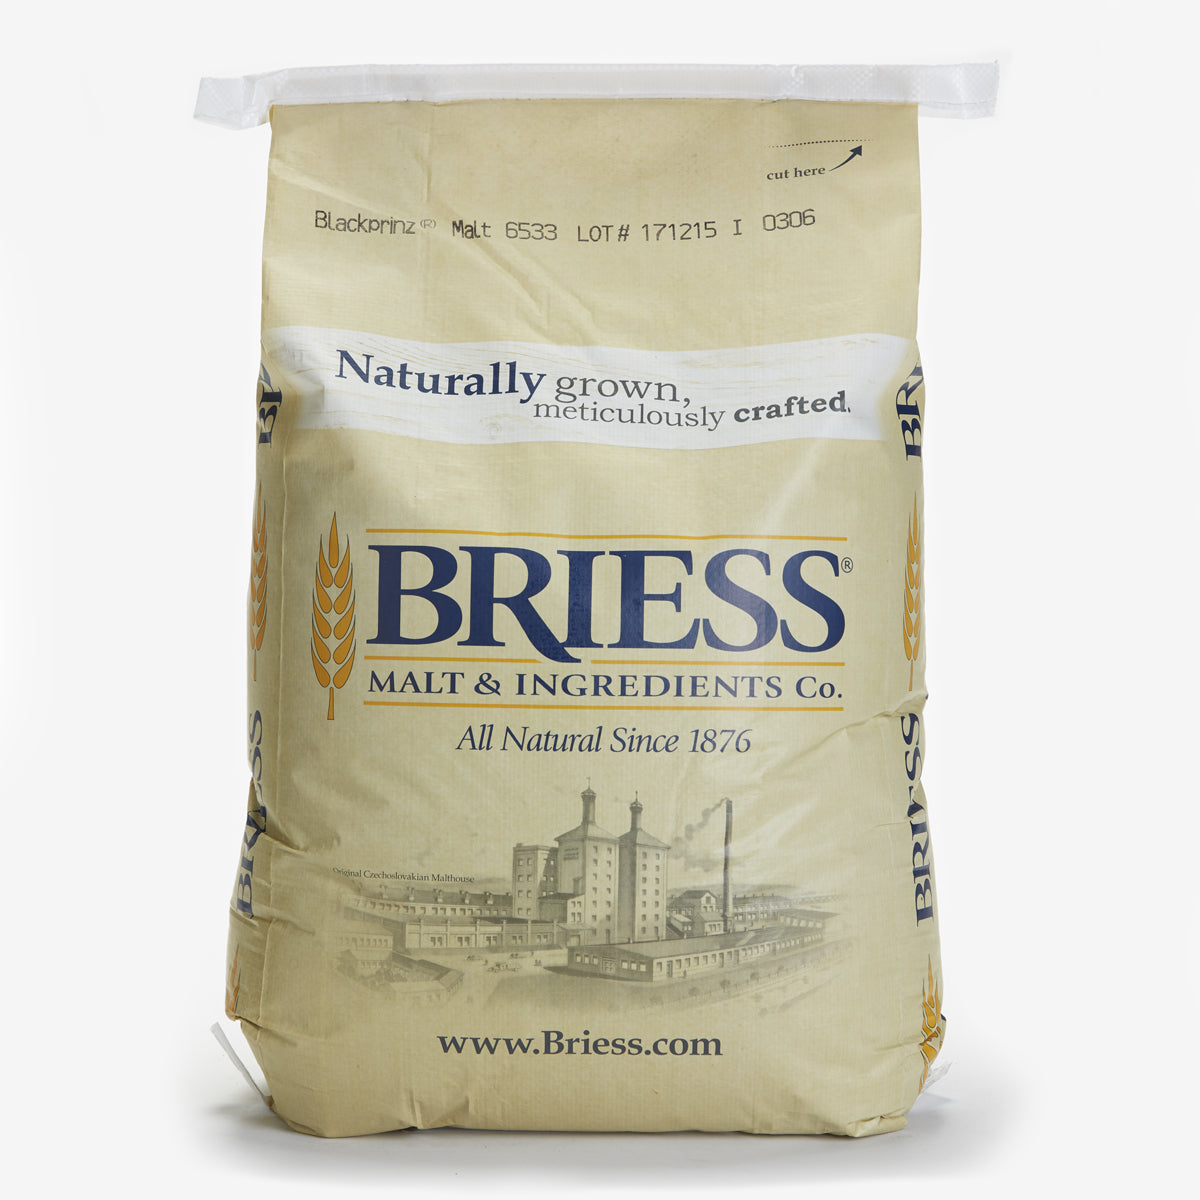 Briess BlackPrinz Malt (Bitterless)